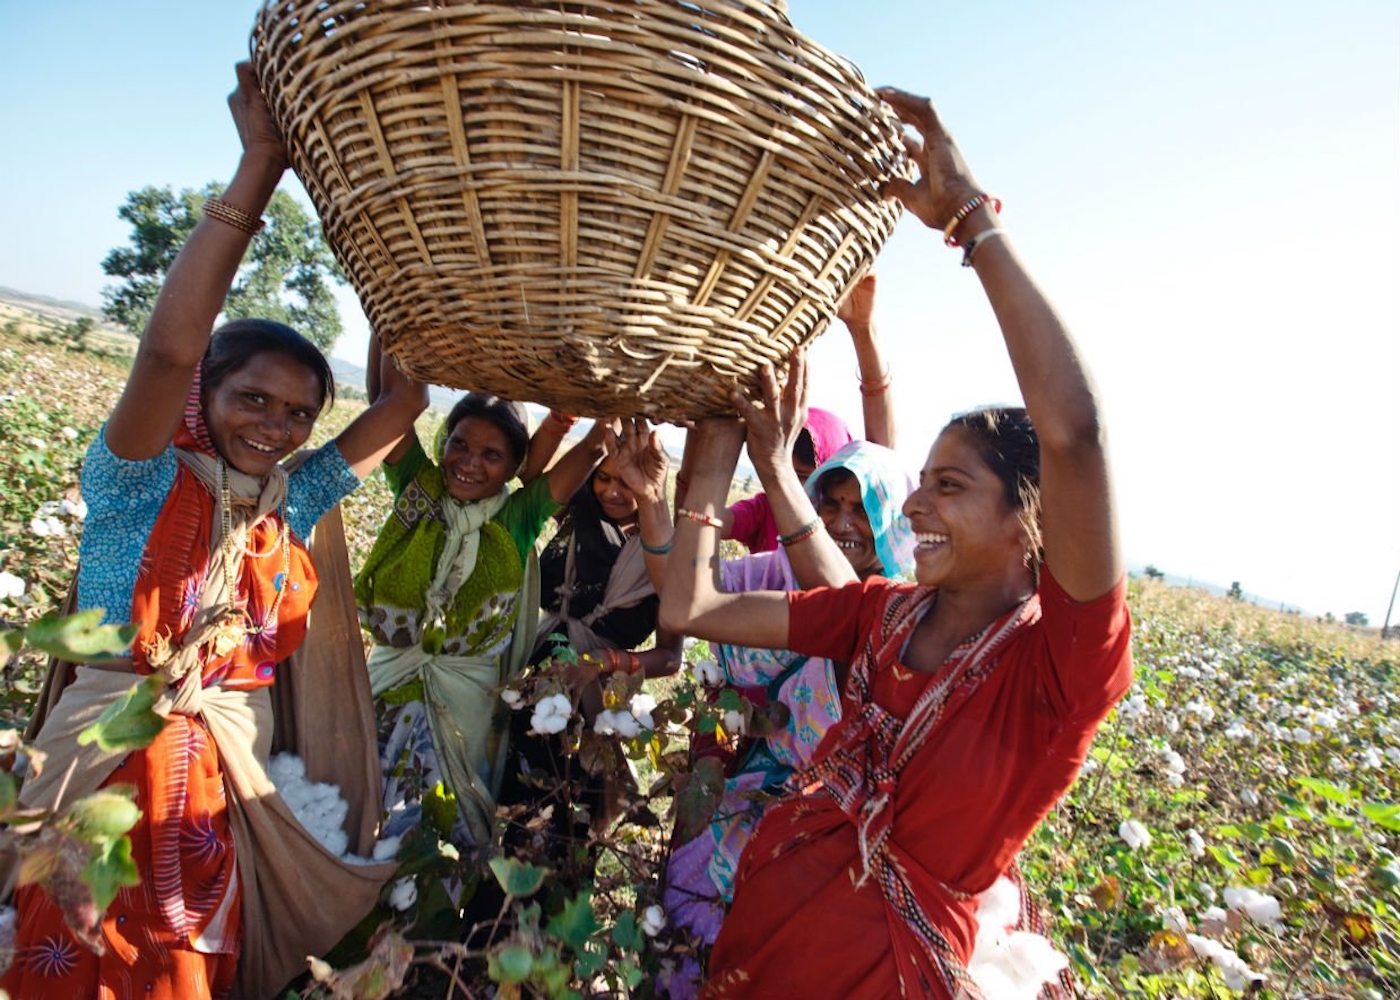 foto van vrouwen met een grote mand boven hun hoofd in een katoenveld in india